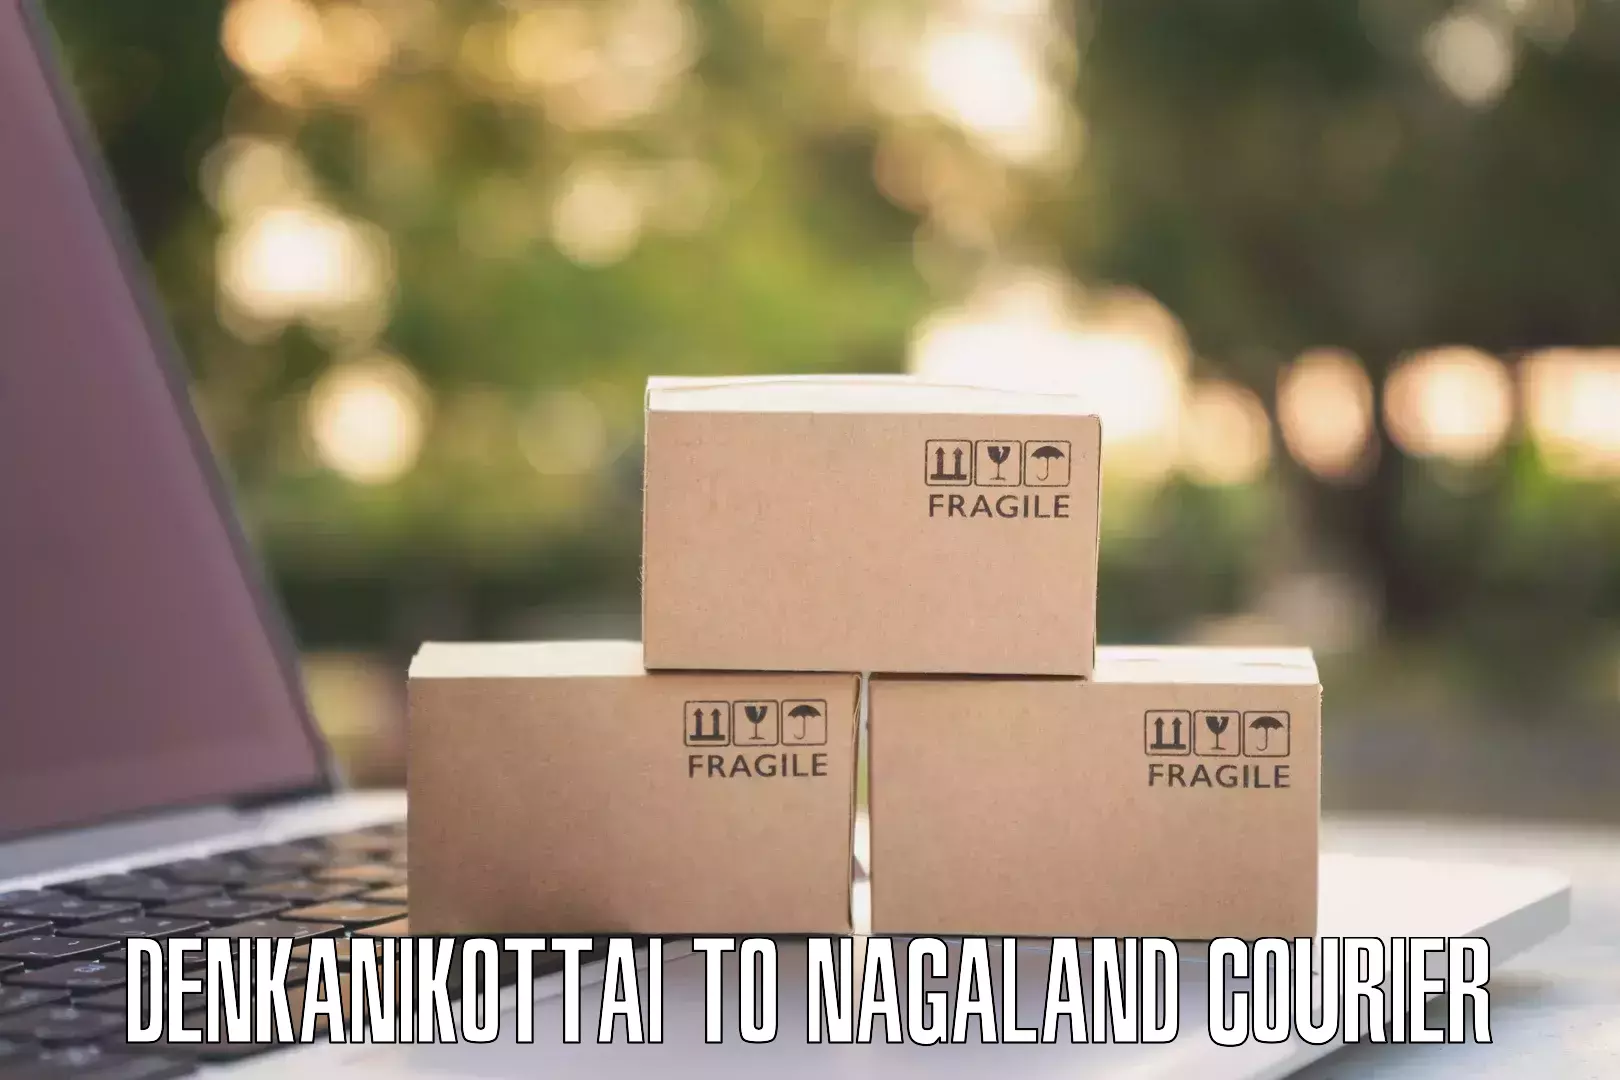 Full-service courier options Denkanikottai to Tuensang